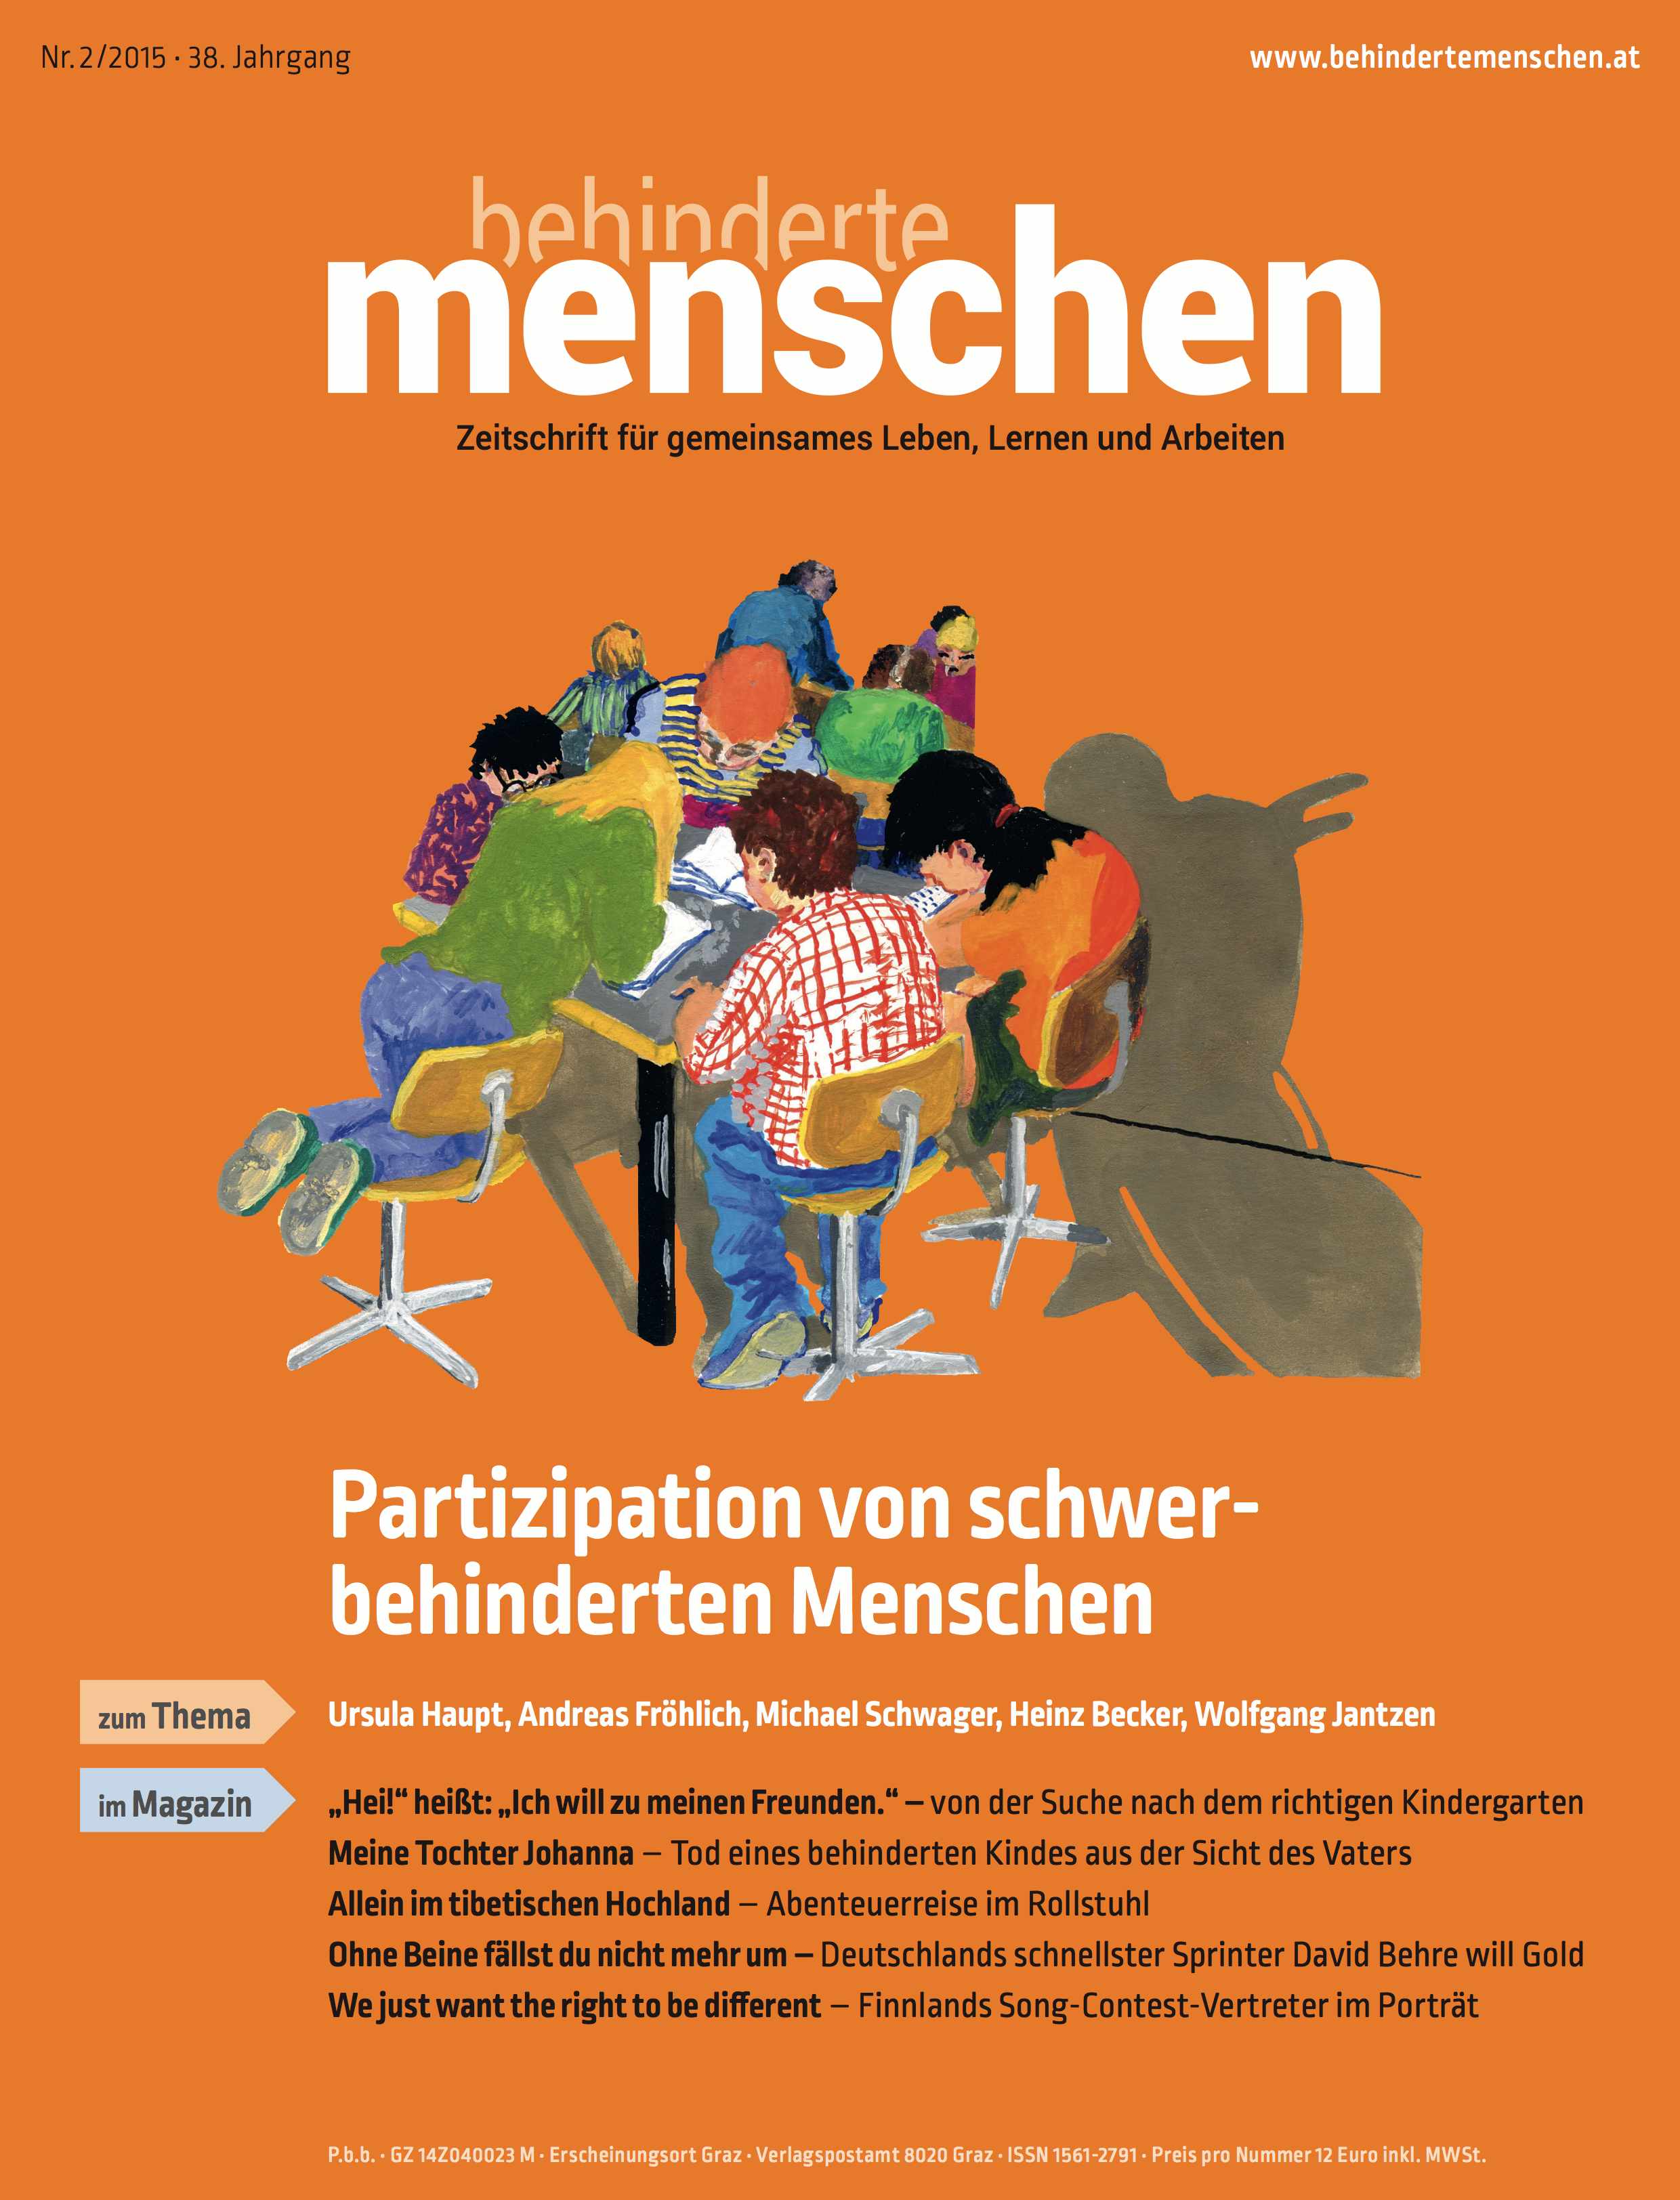 Titelbild der Zeitschrift BEHINDERTE MENSCHEN, Ausgabe 2/2015 "Partizipation von schwerbehinderten Menschen"